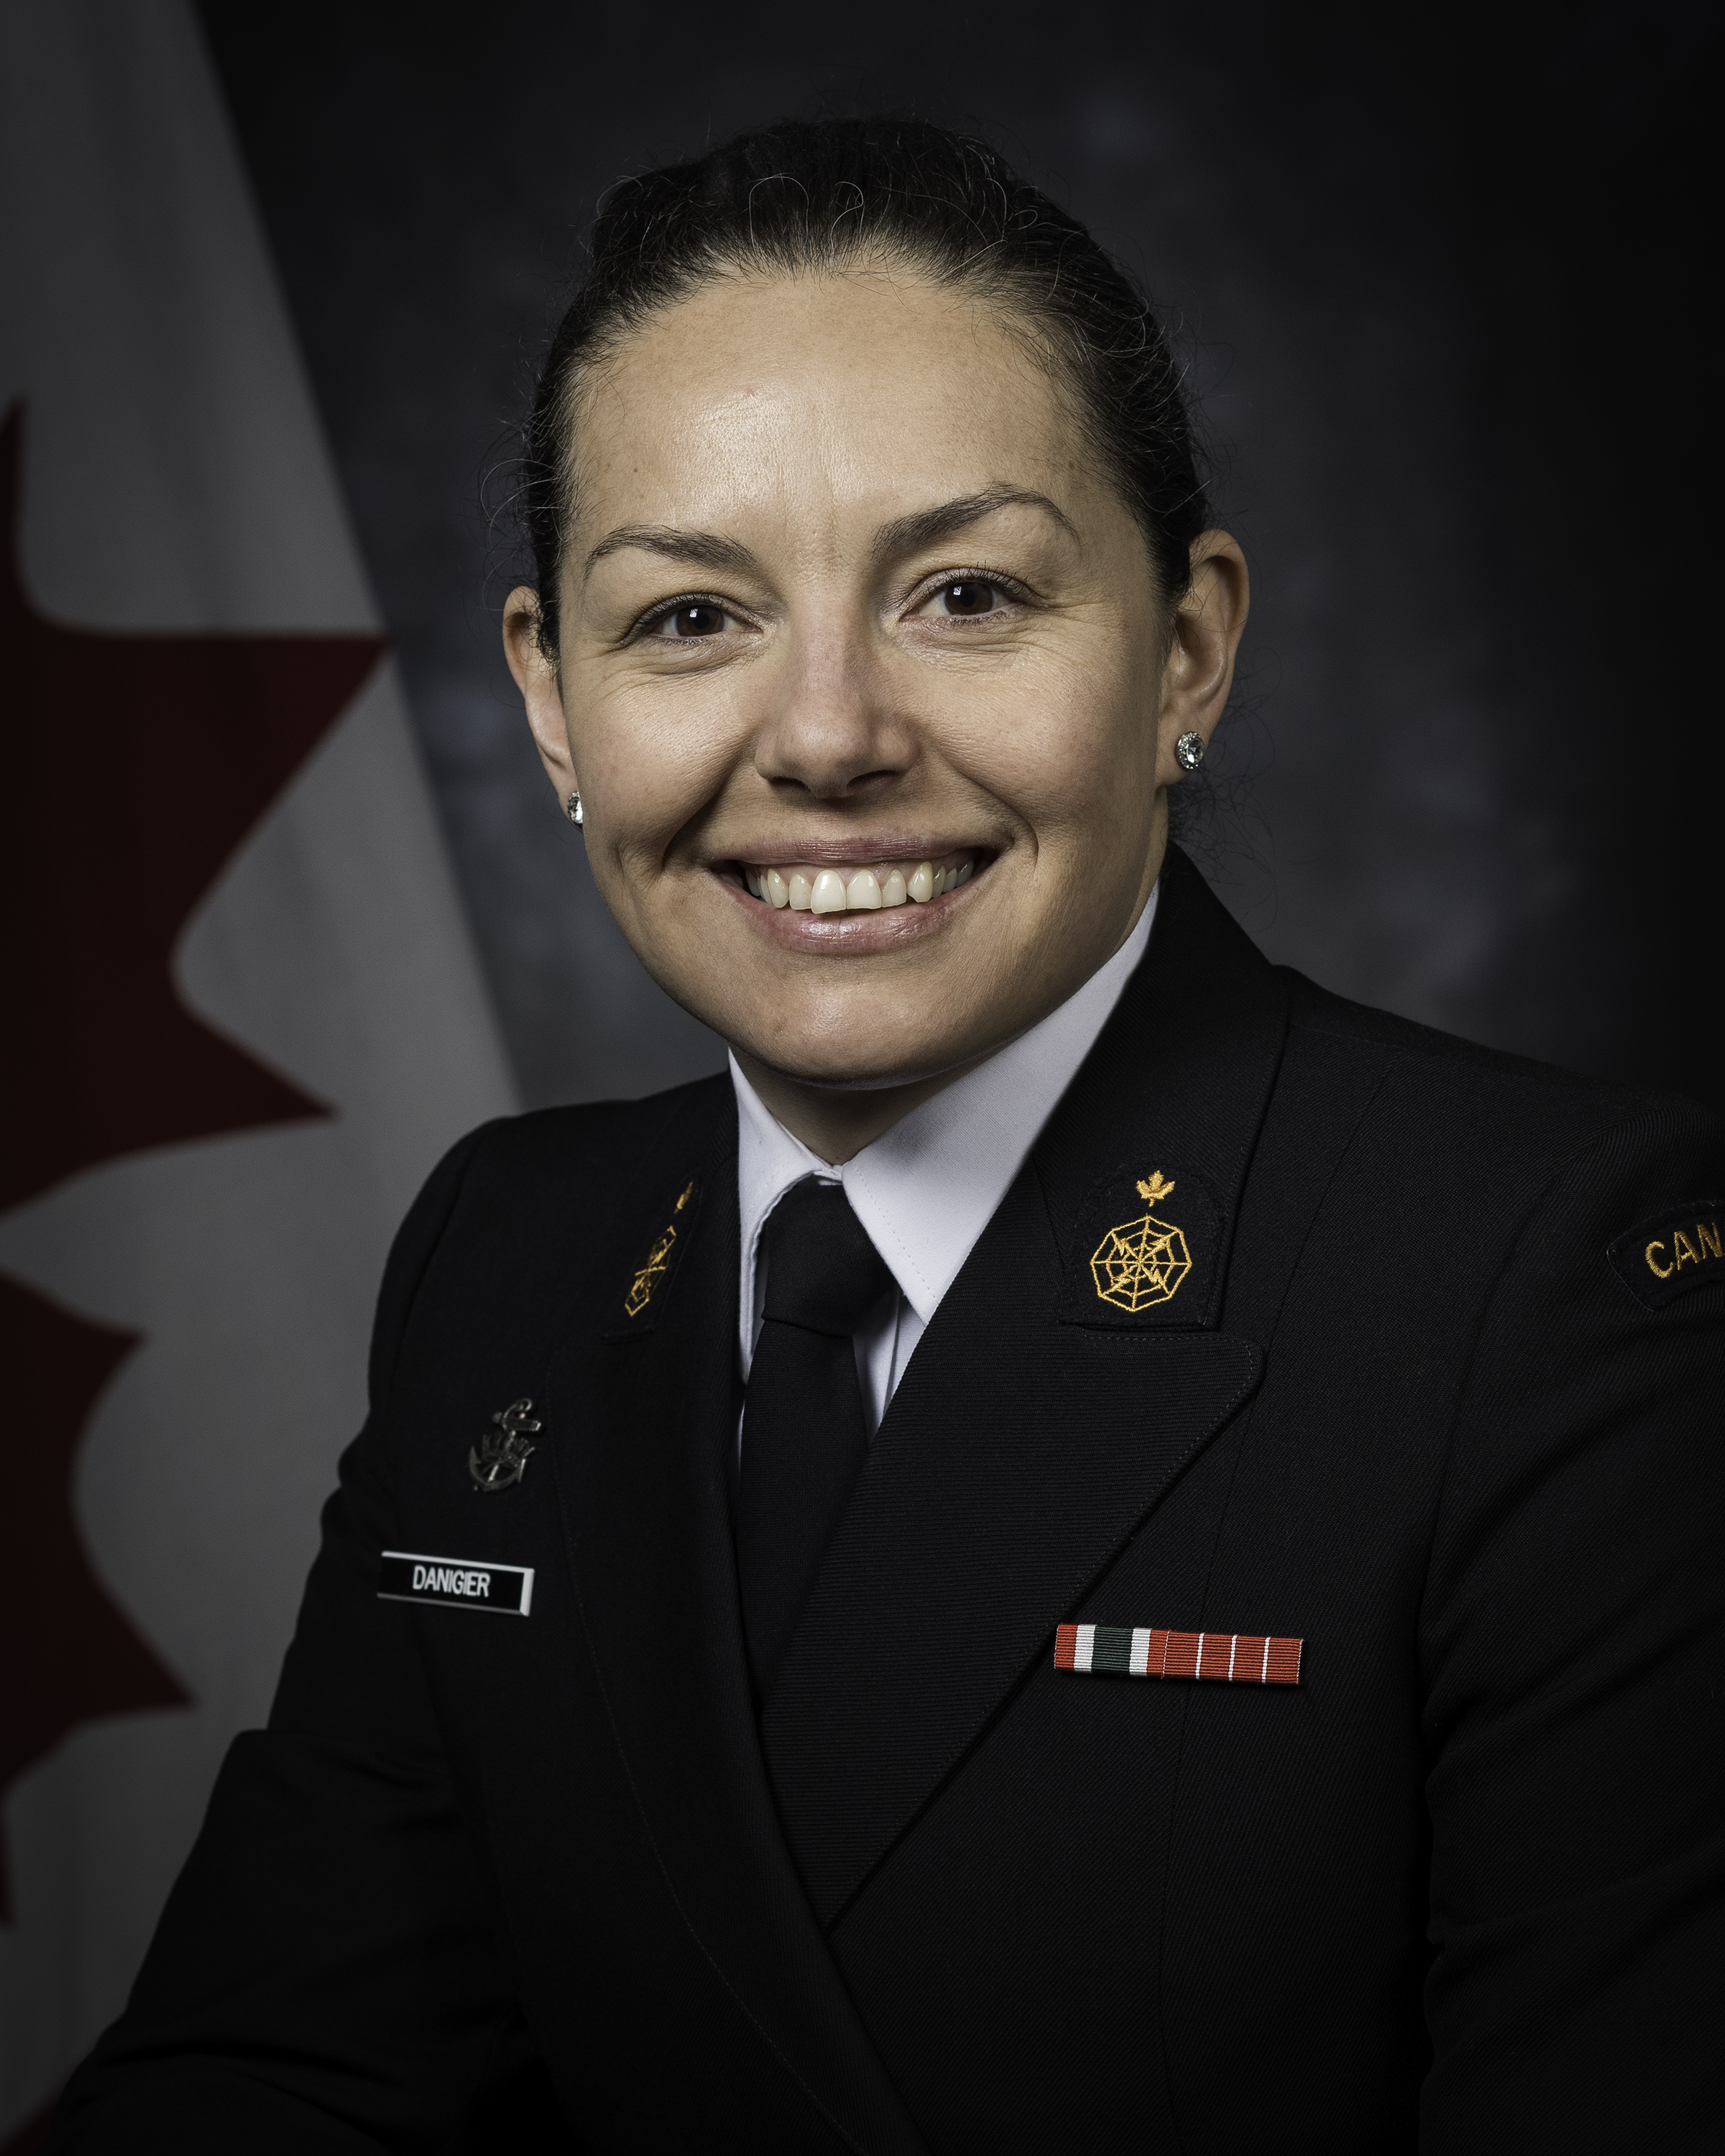 Chief Petty Officer,2nd Class Katarzyna Danigier